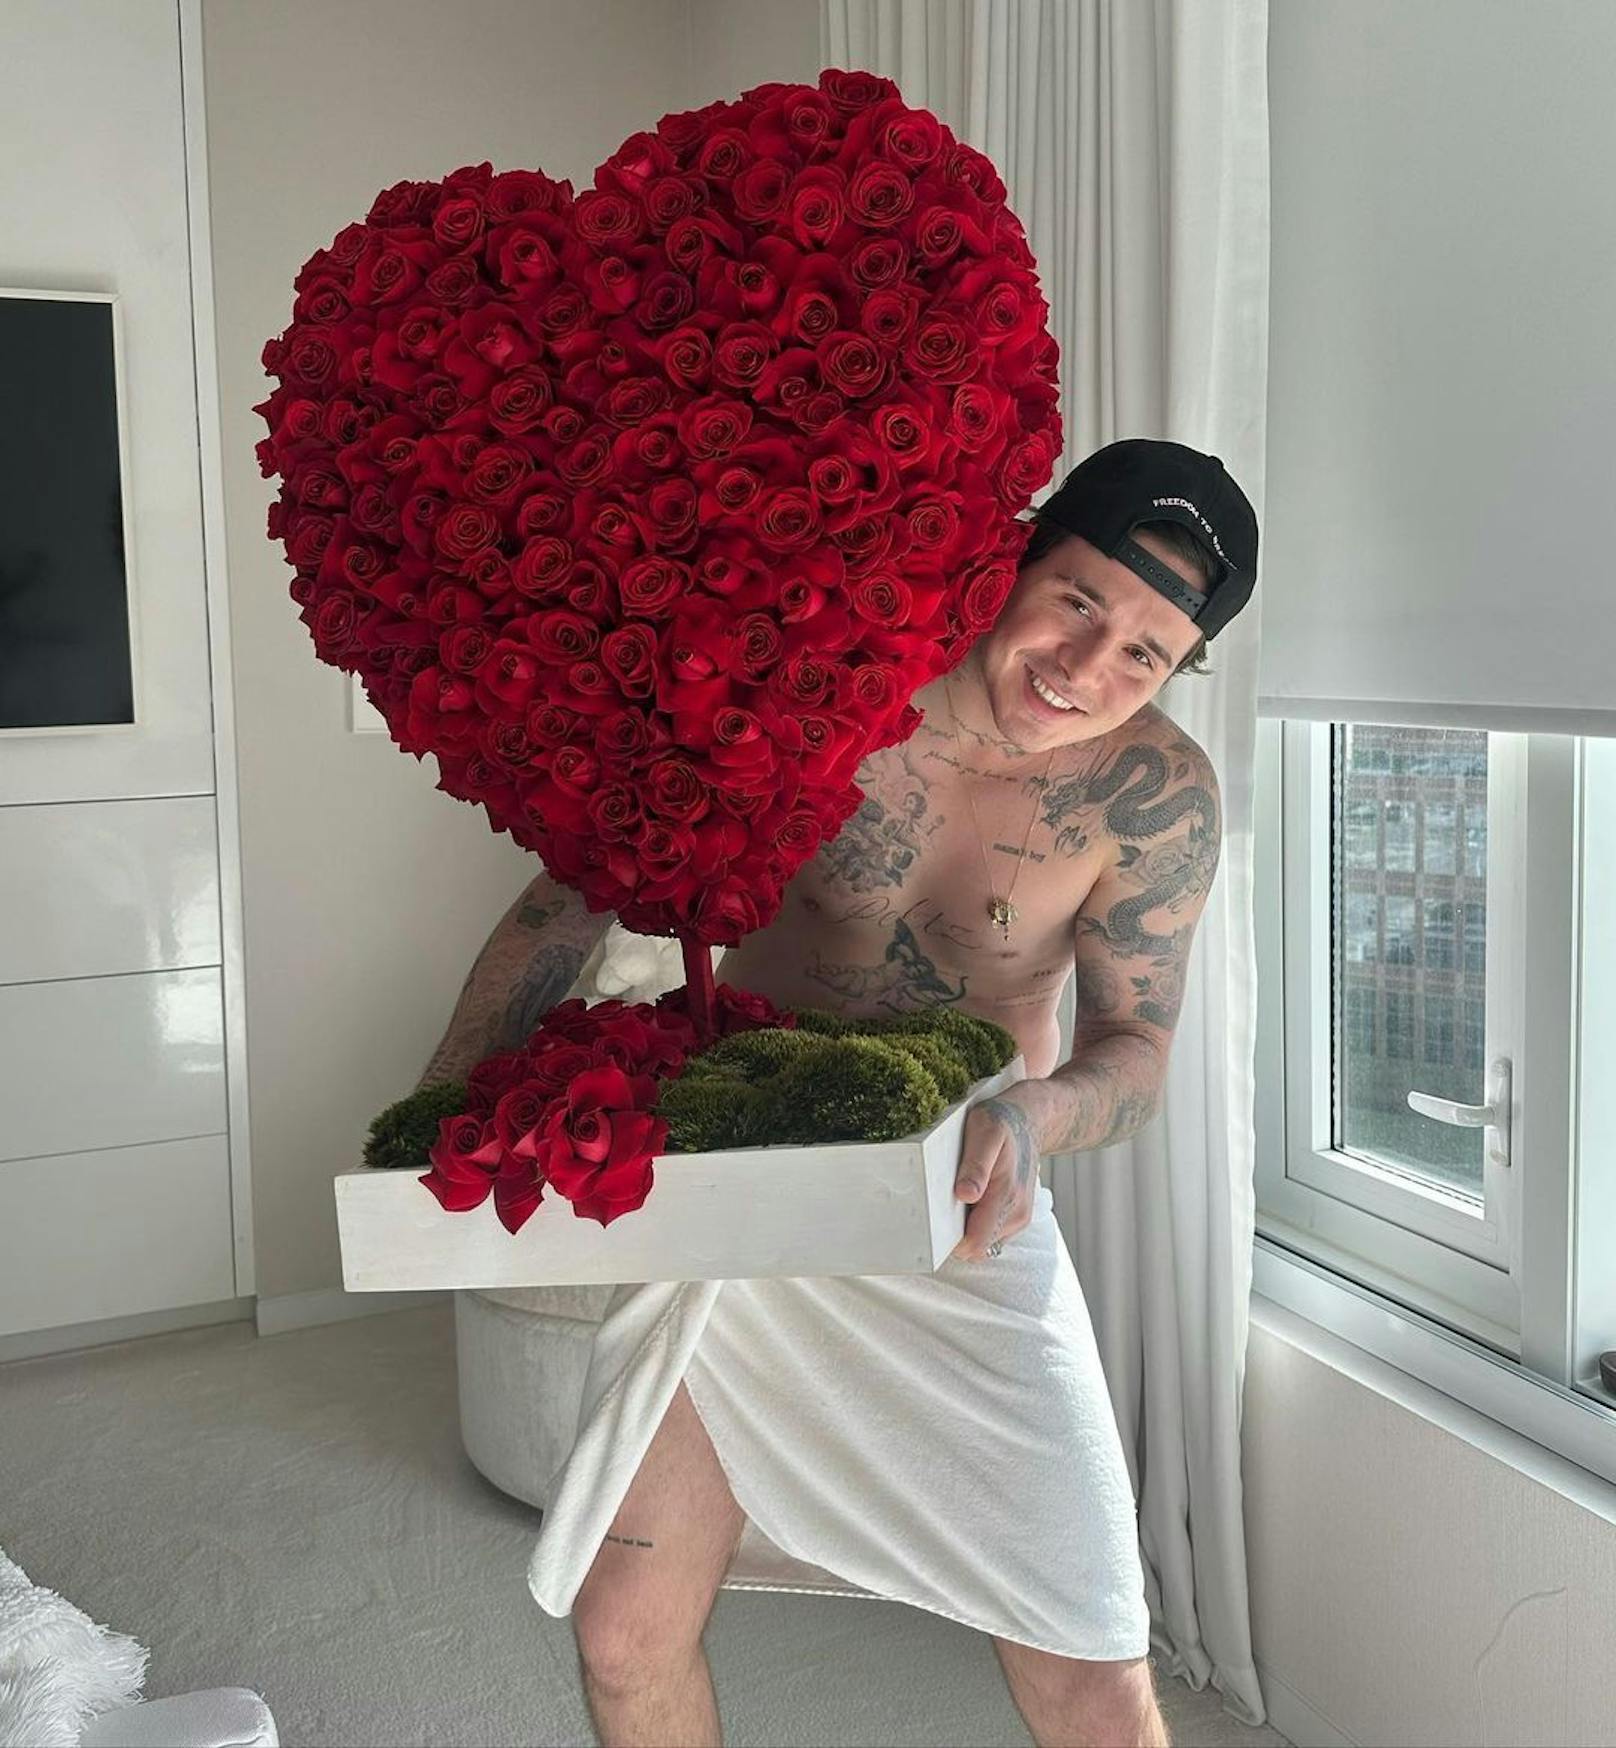 Zum Valentinstag wurde Nicola Peltz Beckham von ihrem Brooklyn mit einem Rosen-Herz beschenkt.